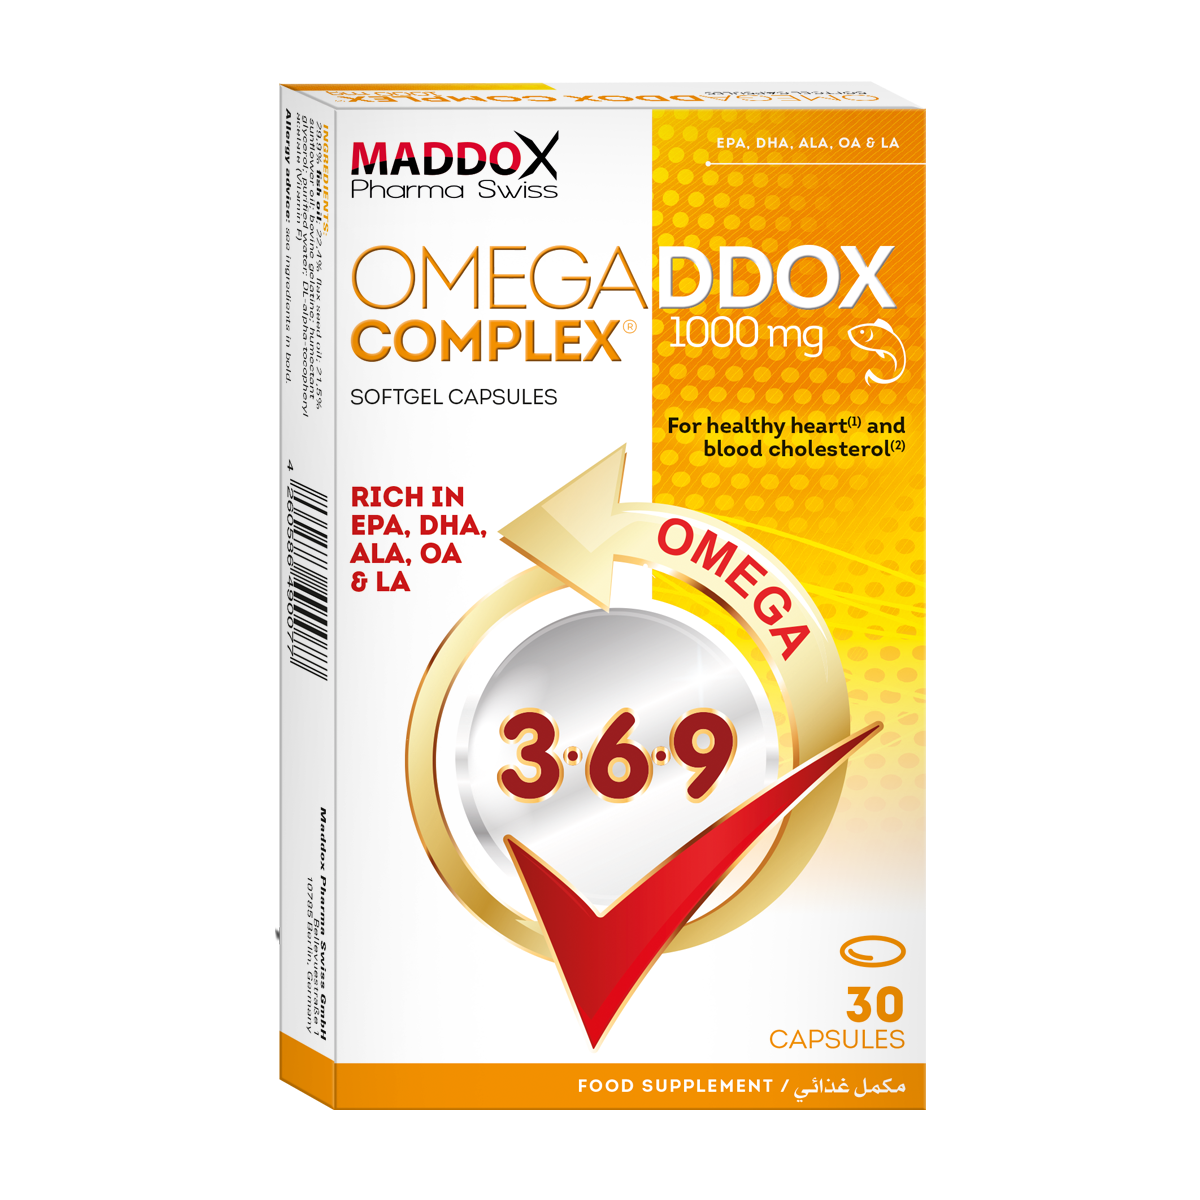 Omegaddox Complex 